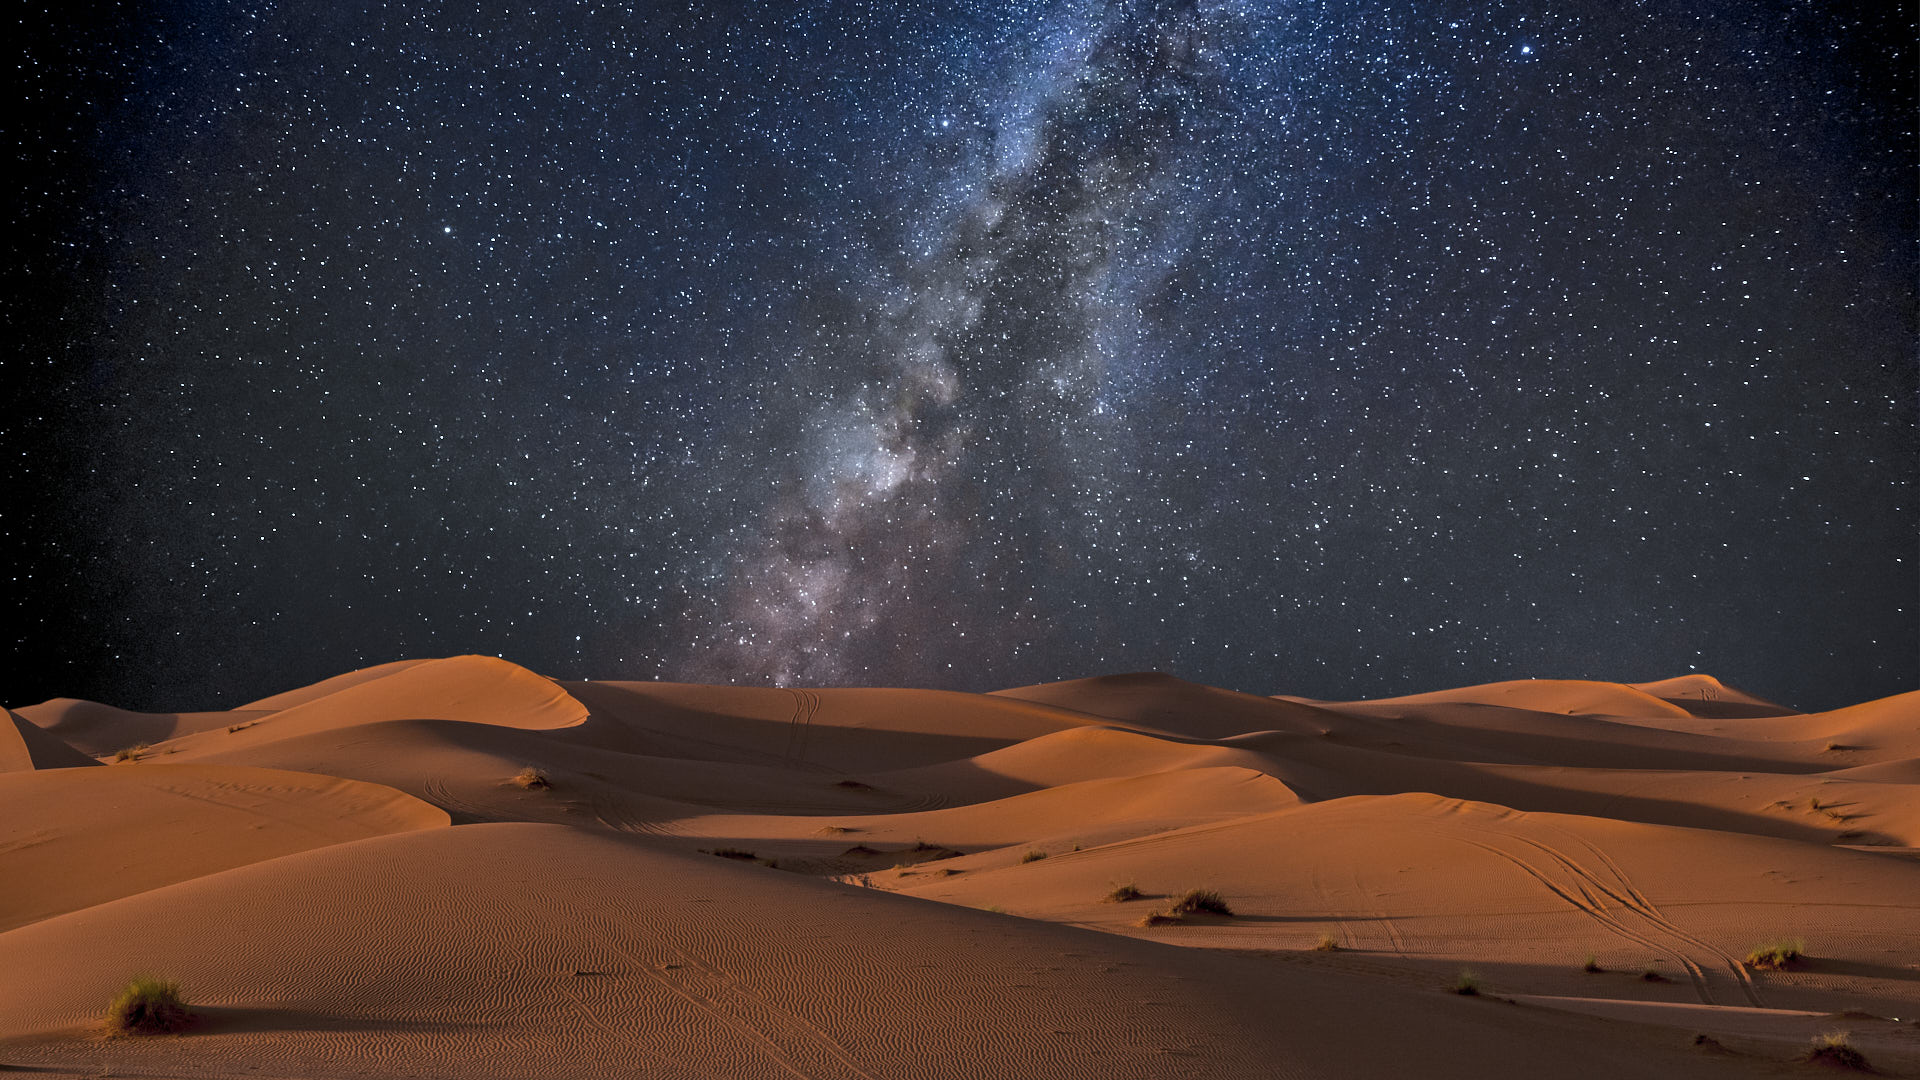 Sahara 3.jpg